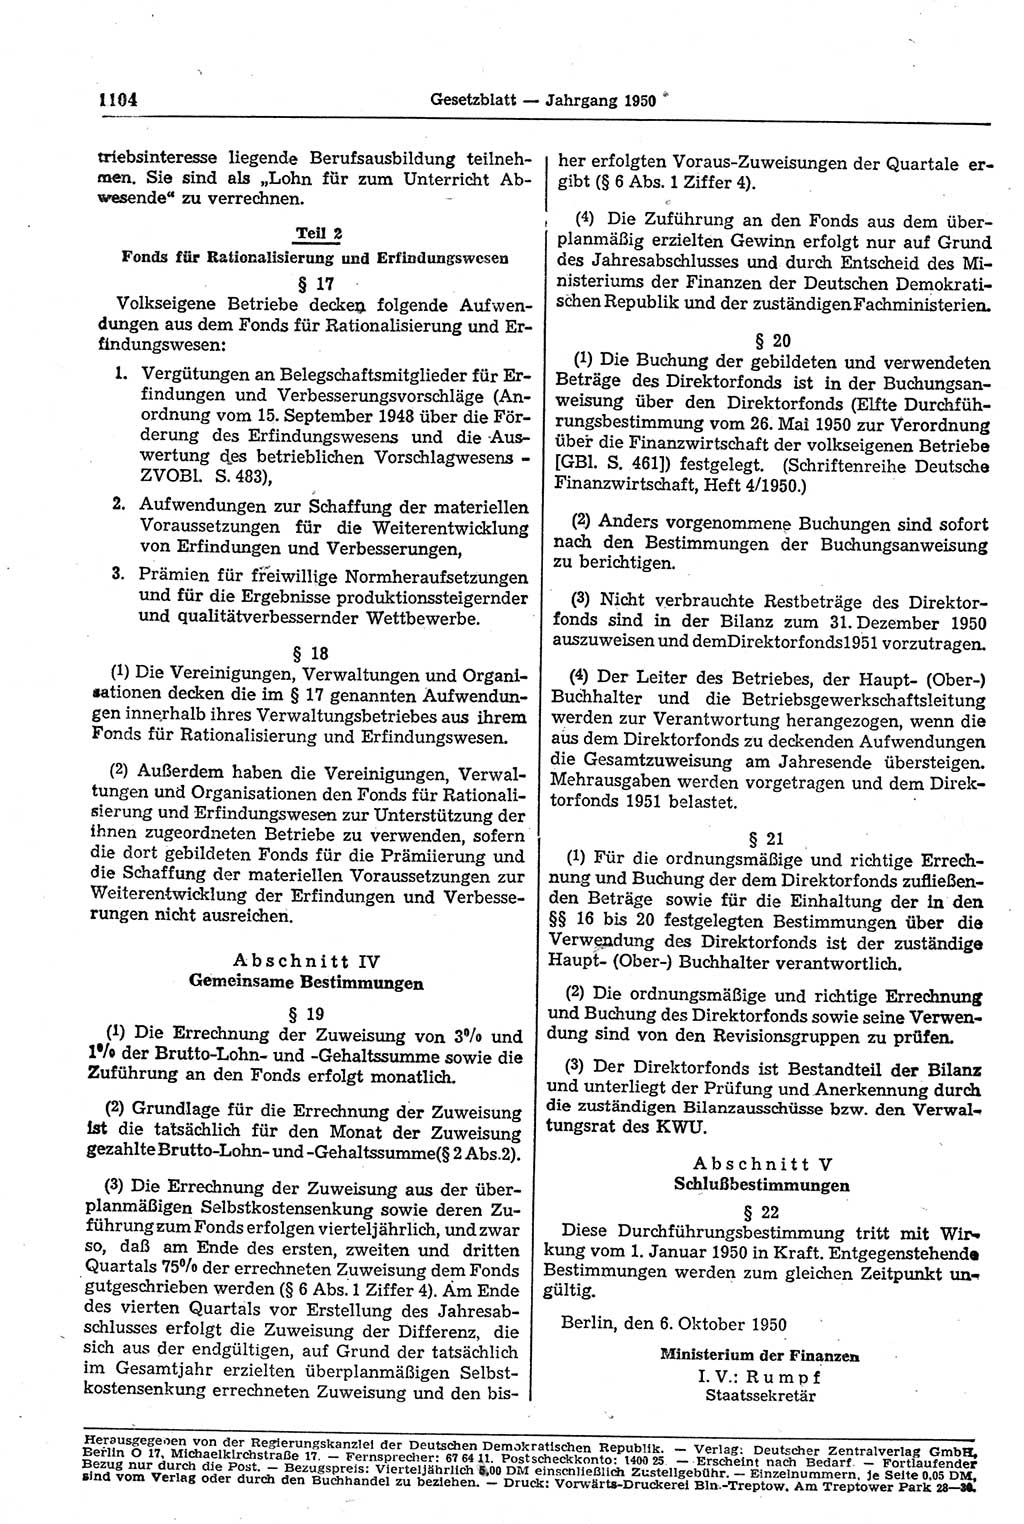 Gesetzblatt (GBl.) der Deutschen Demokratischen Republik (DDR) 1950, Seite 1104 (GBl. DDR 1950, S. 1104)